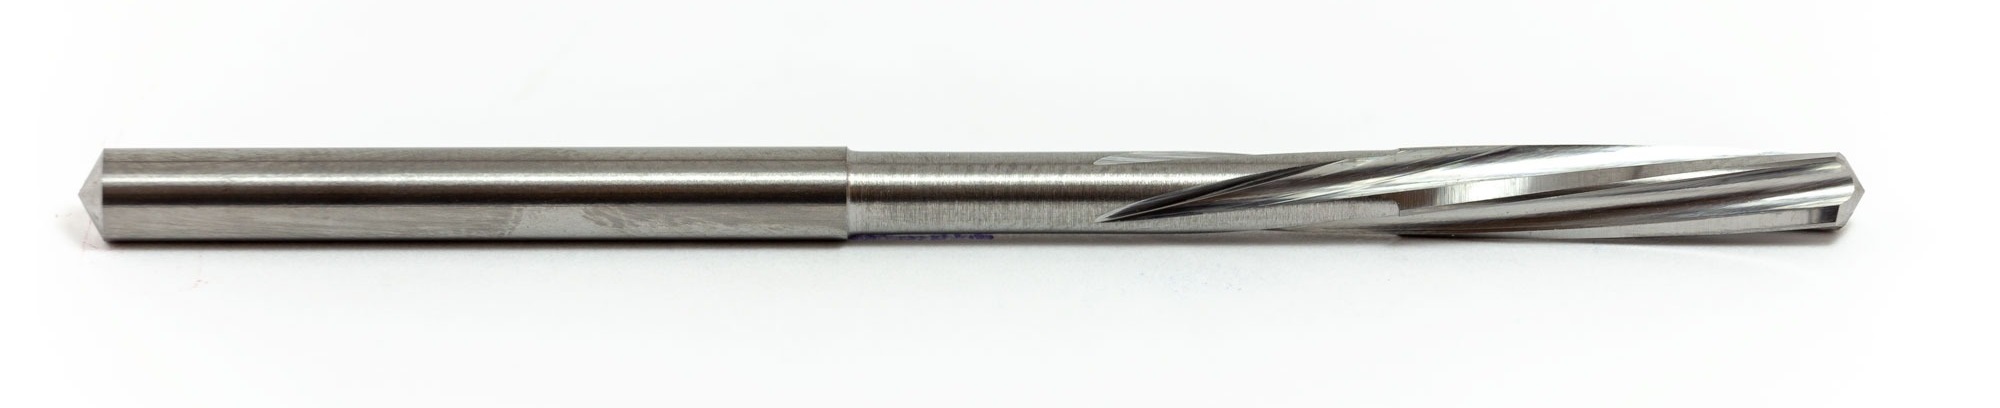 瑞士TUSA  铰刀 MS402